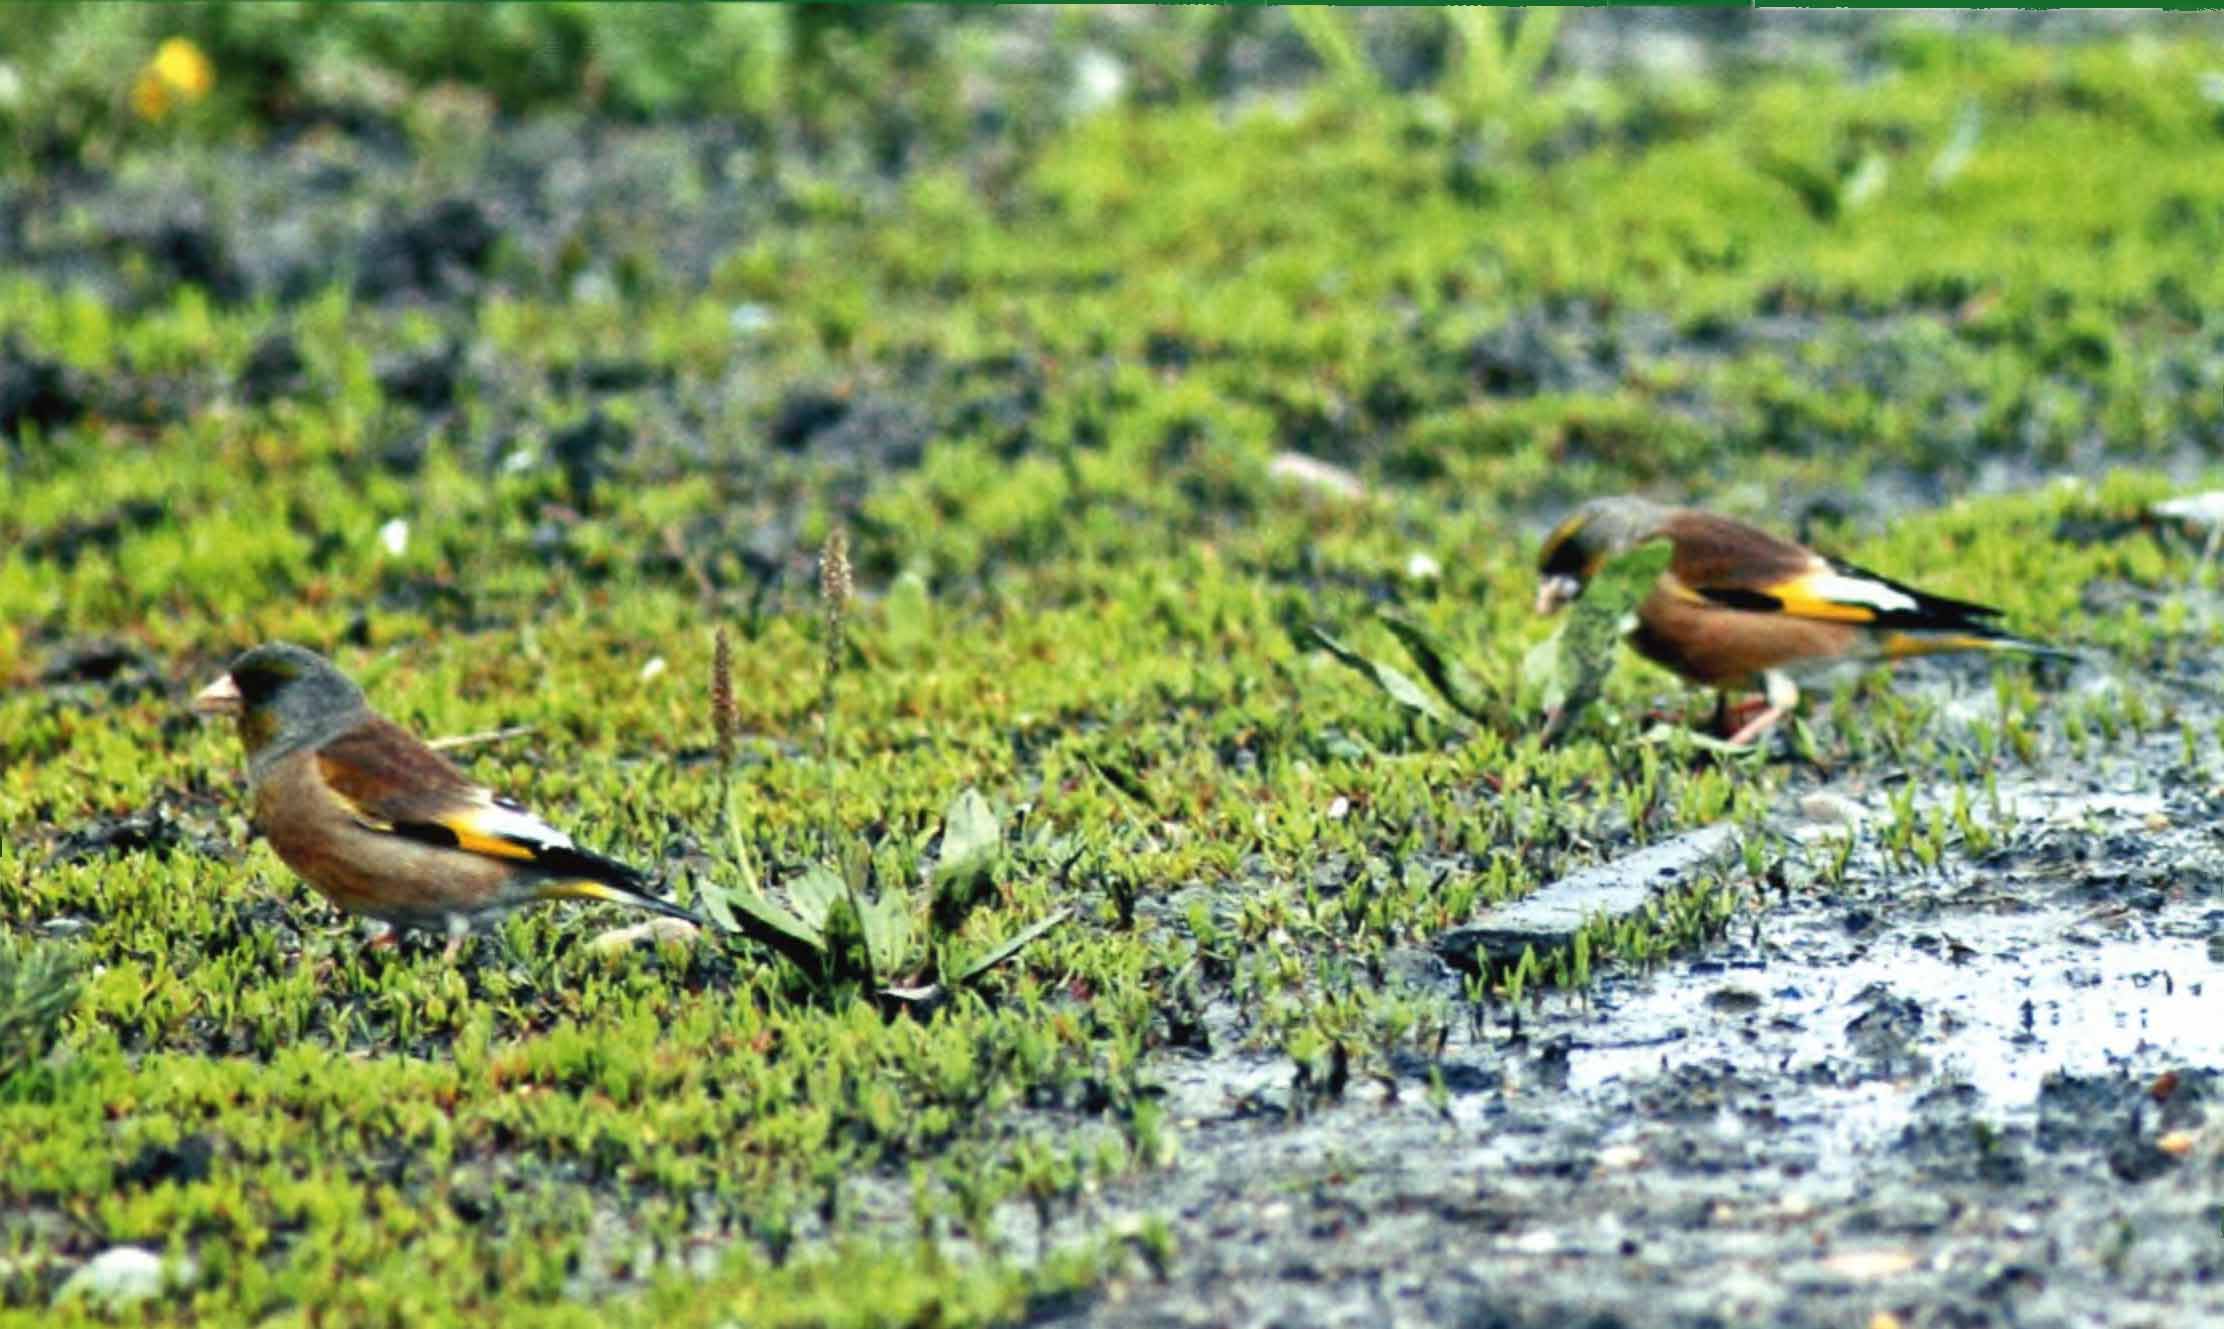 Китайские зеленушки кормятся на траве в одном из поселков Приамурья. Птицы предпочитают для жизни антропогенный ландшафт.